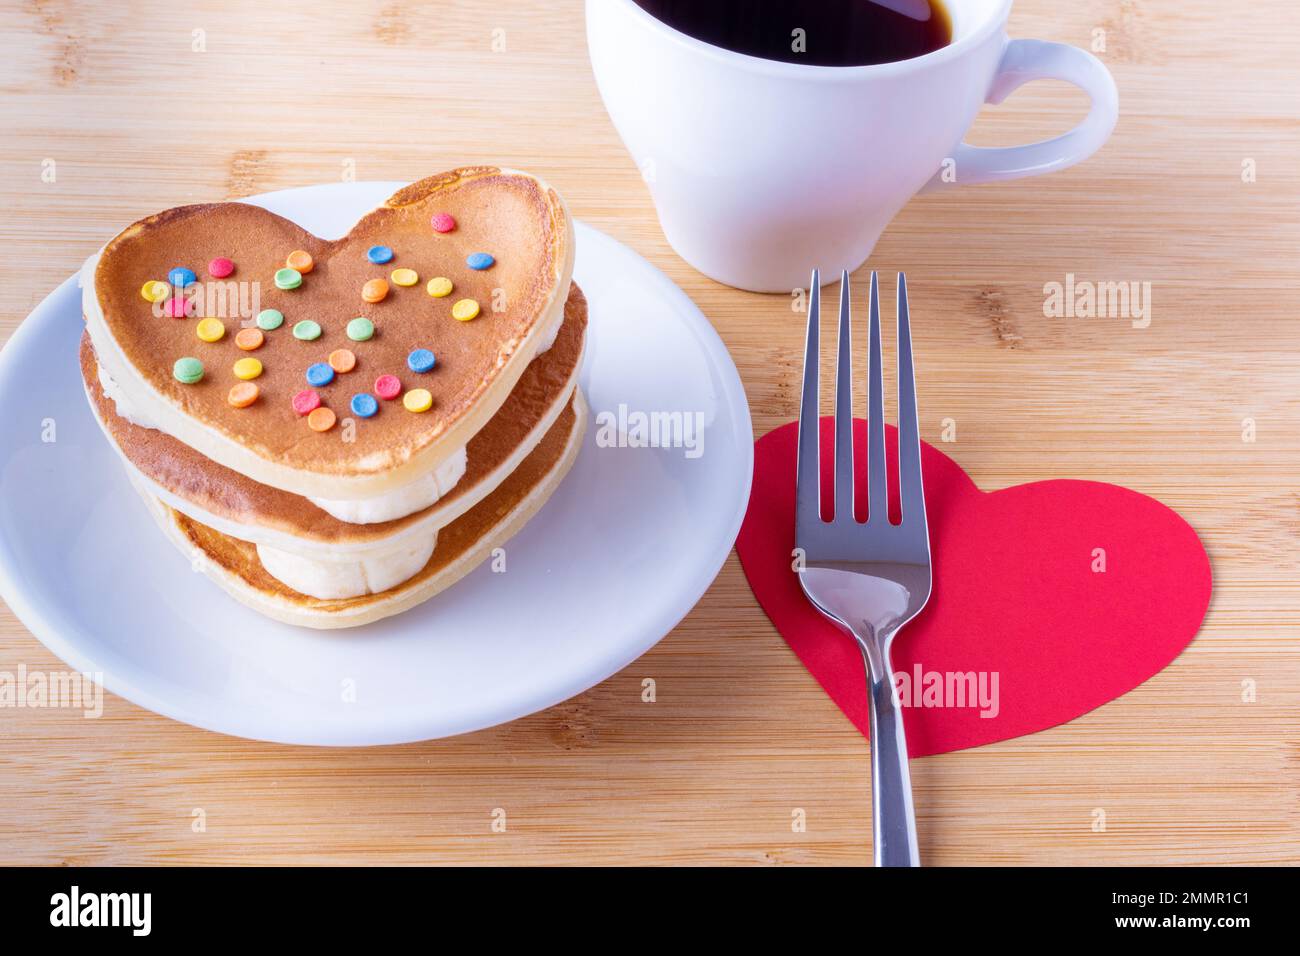 Hausgemachte herzförmige Pfannkuchen mit Zuckerdekoration auf einem weißen Teller, einer Gabel auf rotem Herzen, einer Tasse mit Kaffee oder Kakao, Nahaufnahme. Frühstück für Stockfoto